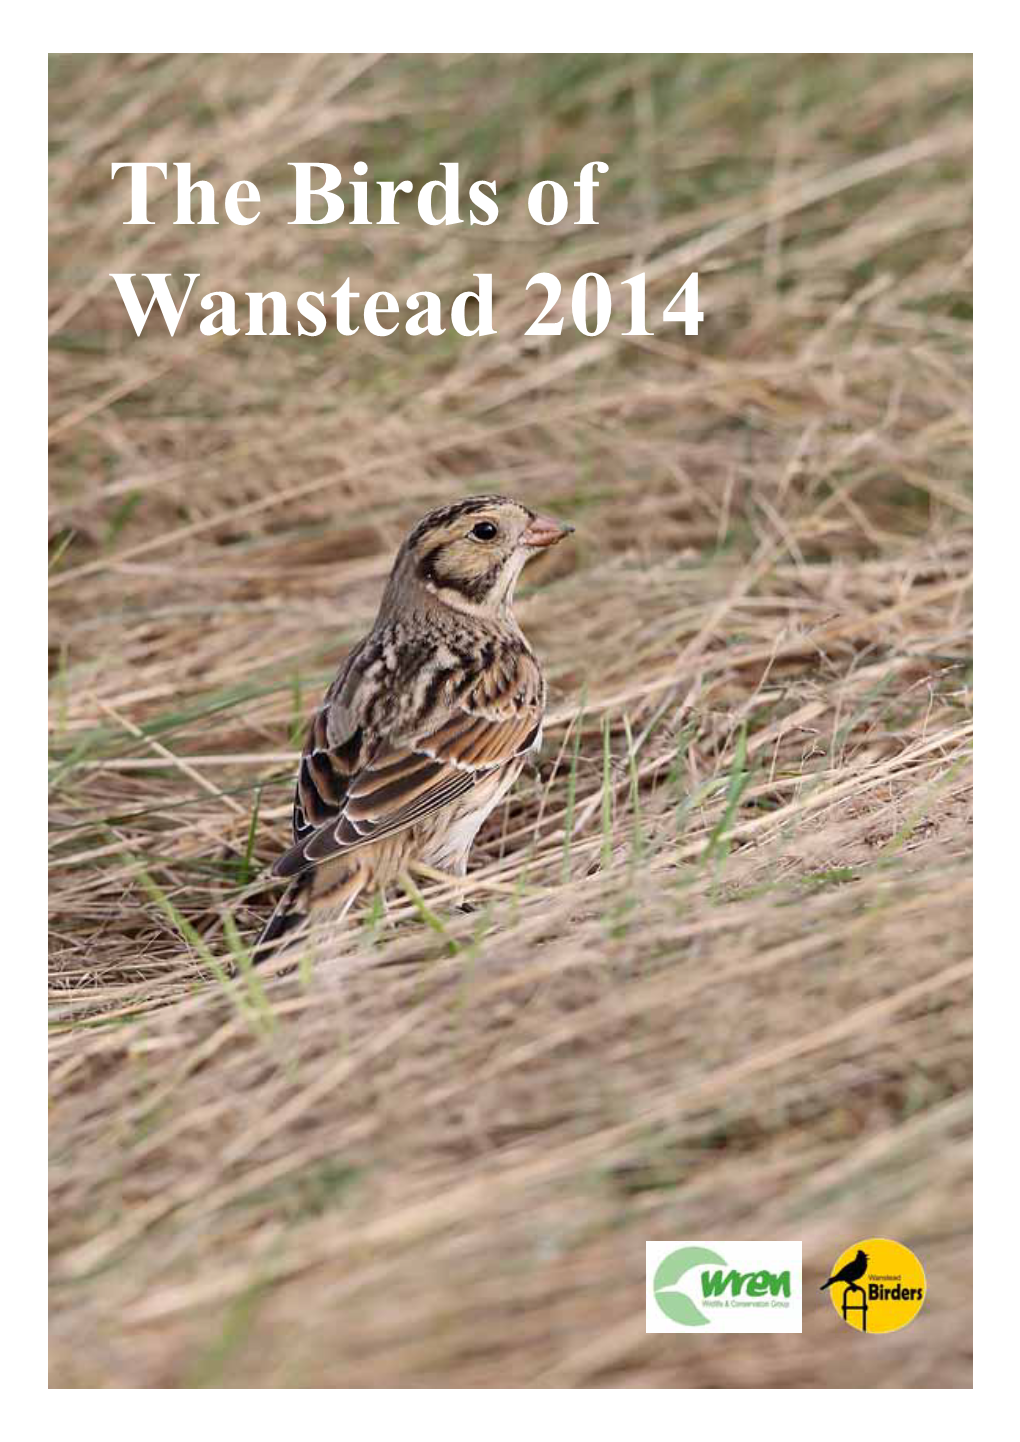 The Birds of Wanstead 2014 the Birds of Wanstead 2014